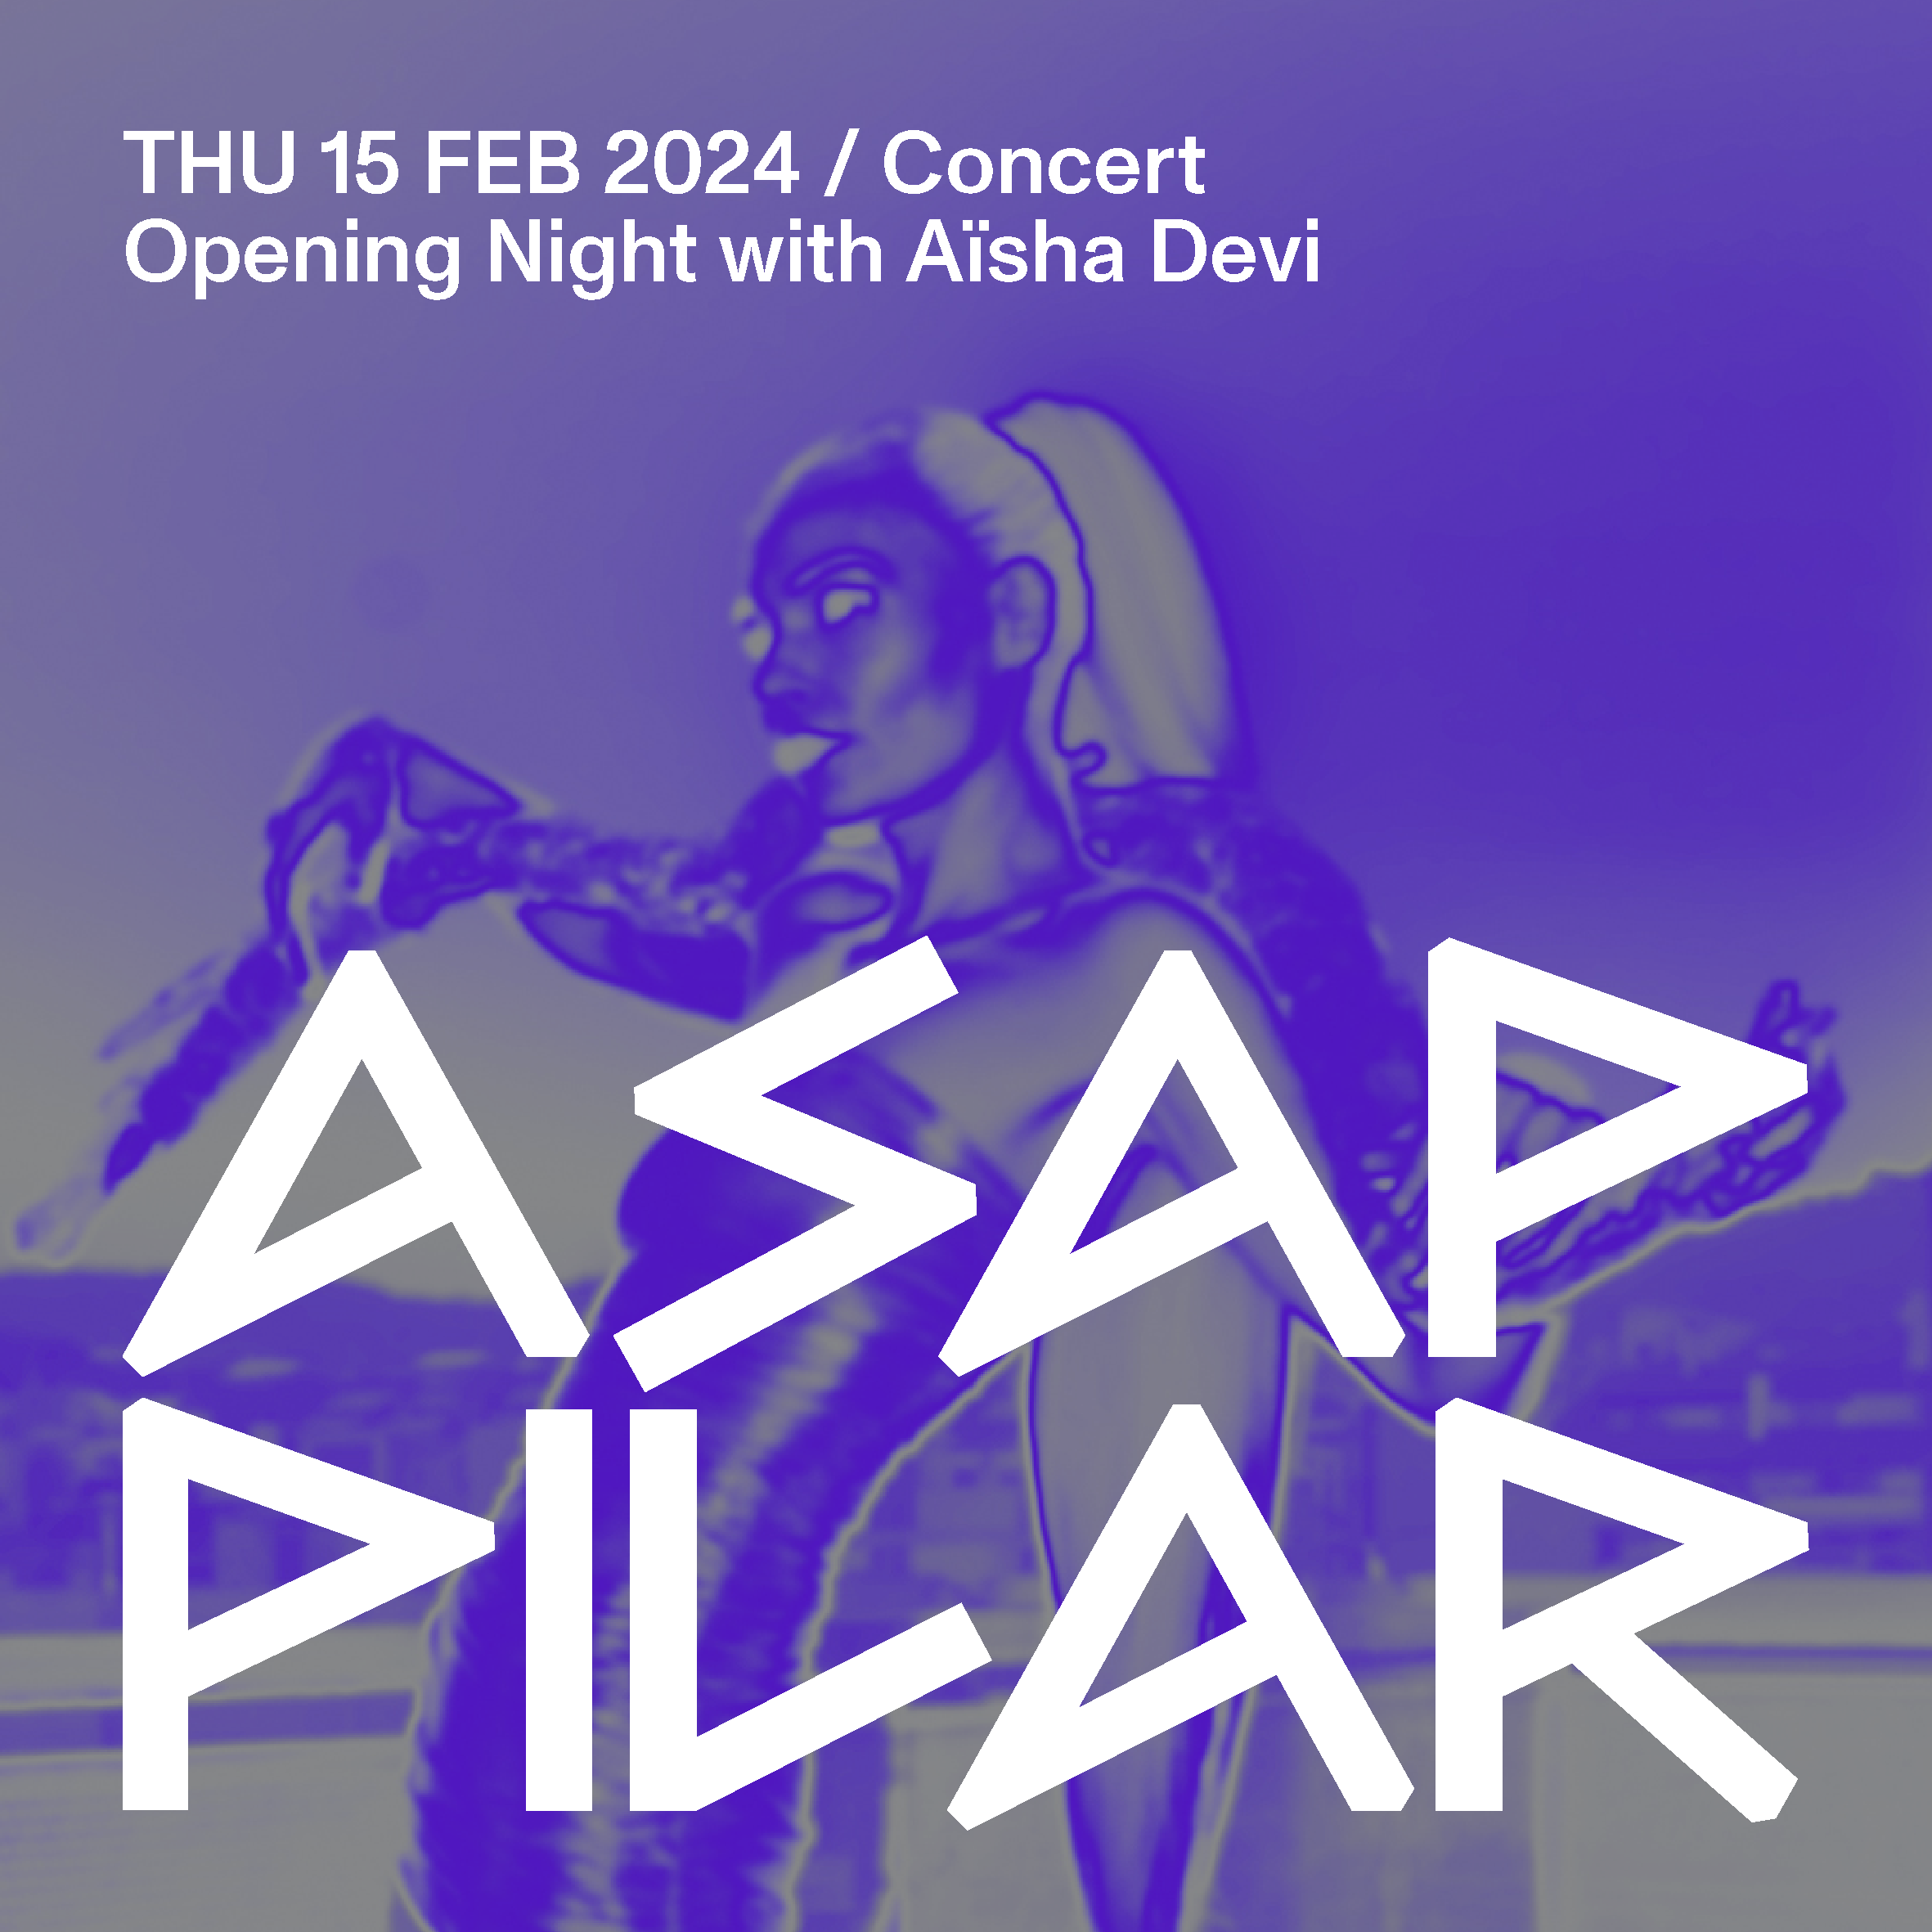 Opening Concert PILAR ASAP with Aïsha Devi - Página frontal